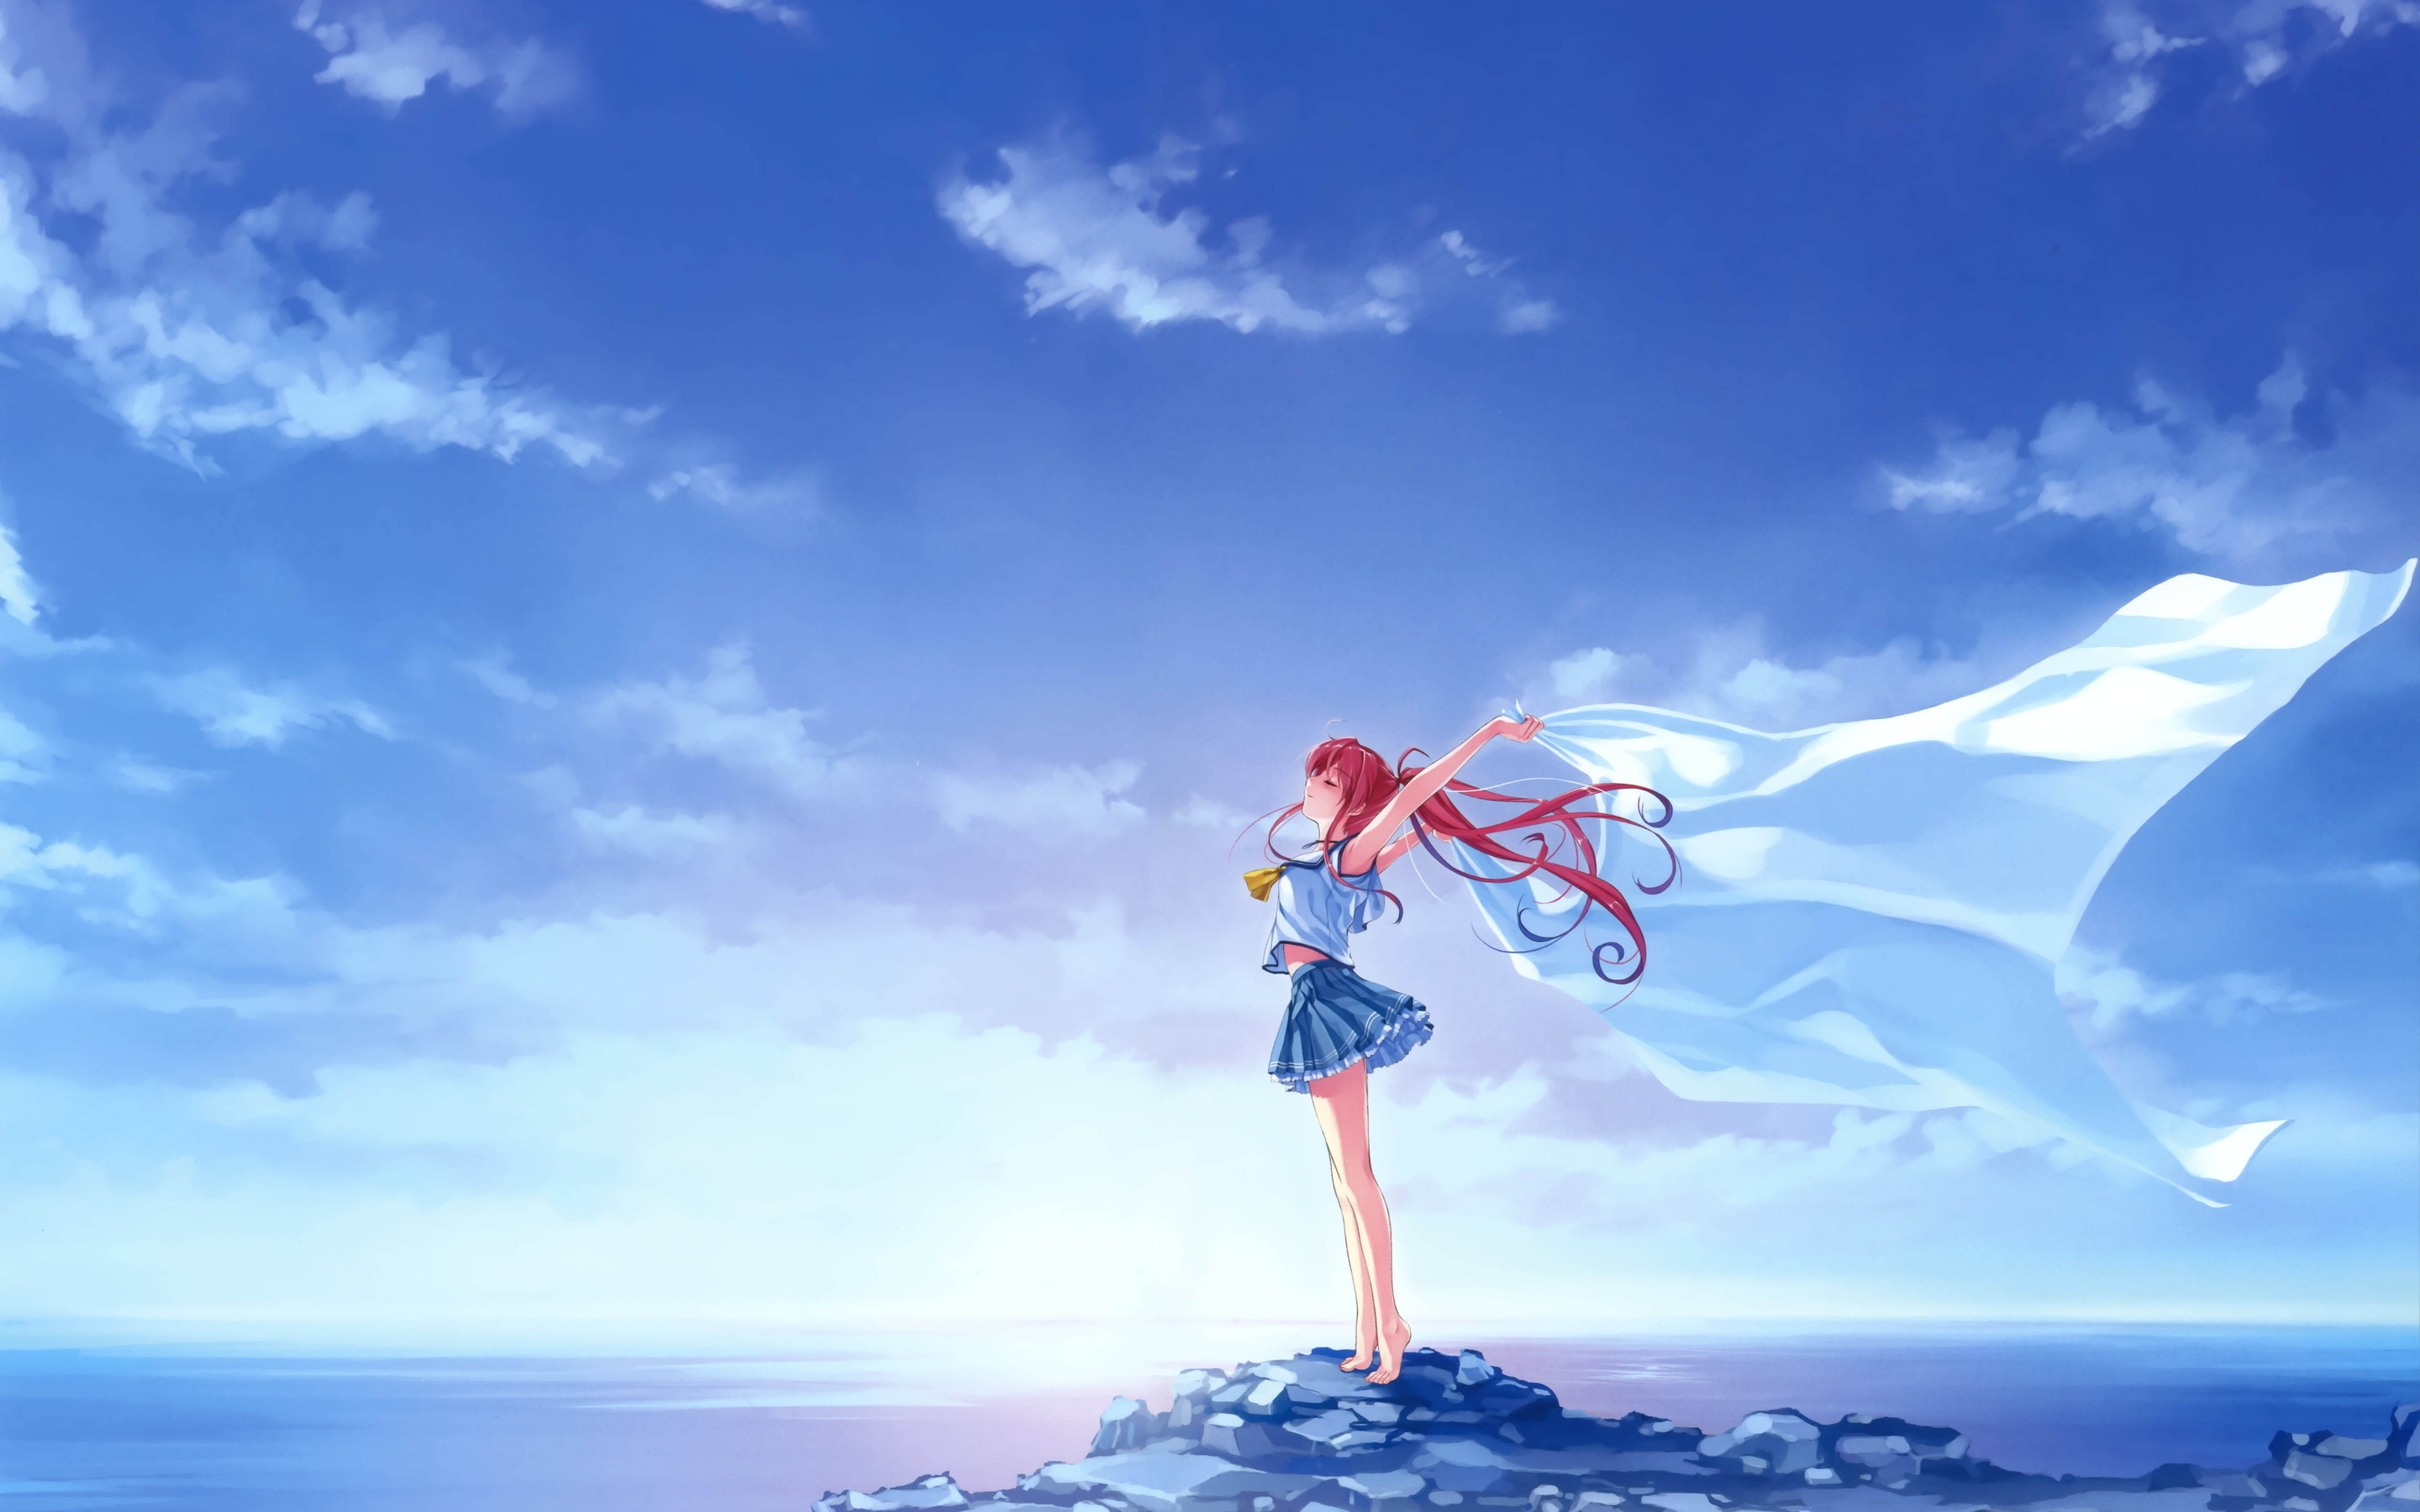 Картинка: Девушка, скала, море, небо, свобода, волосы, ветер, ткань, Miyamae Tomoka, Deep Blue Sky & Pure White Wings